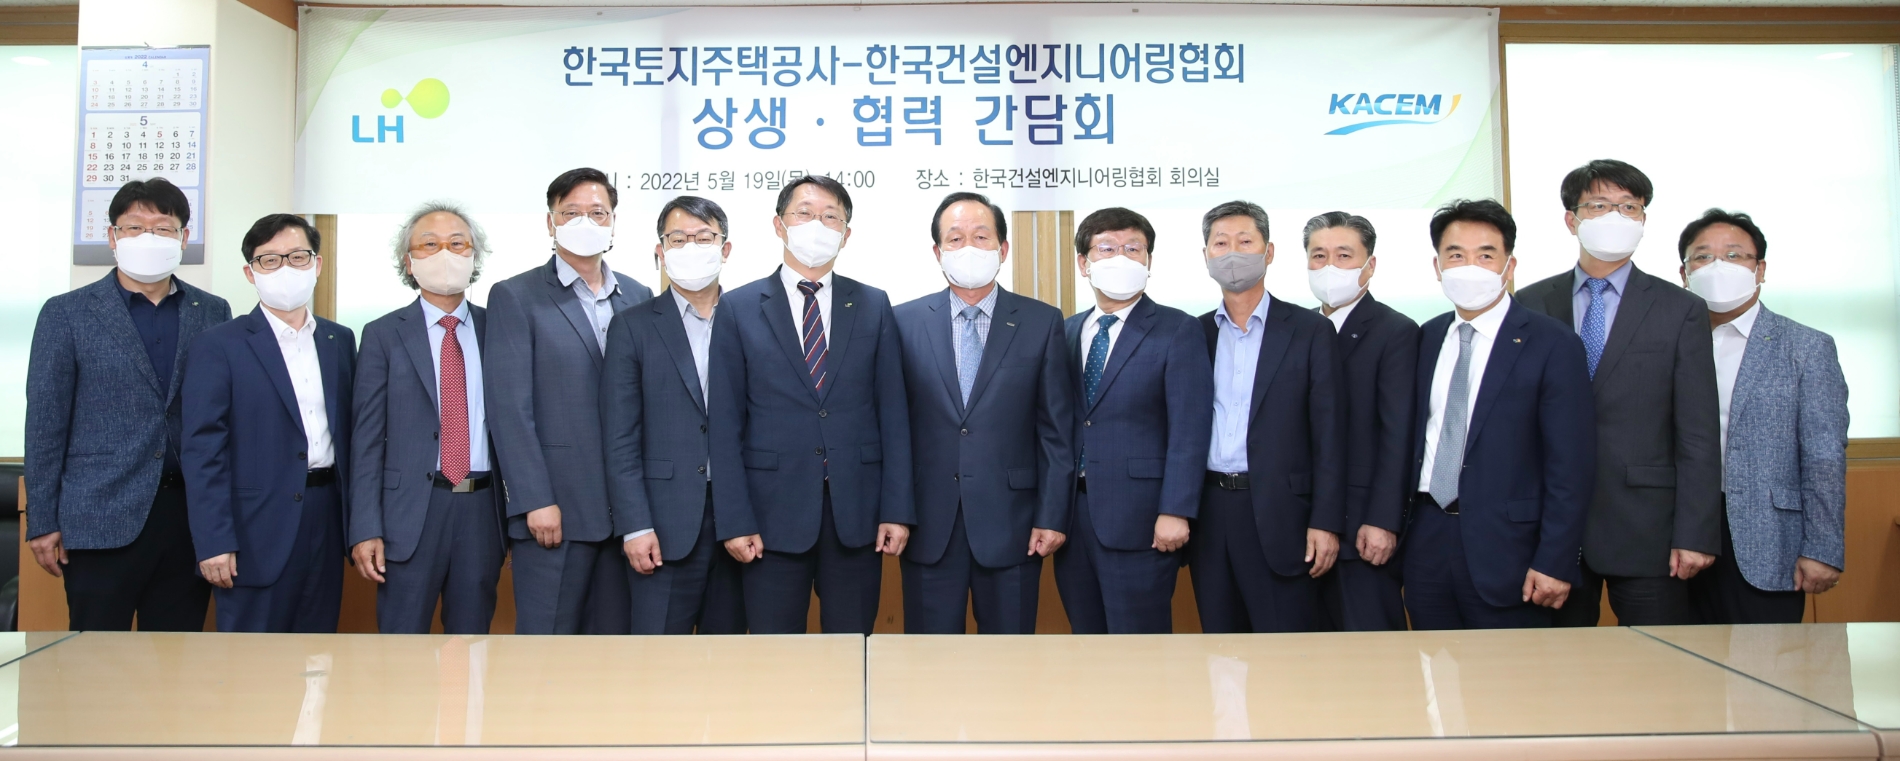 현준 LH사장(사진 왼쪽 여섯 번째)과 한국건설엔지니어링 협회 관계자들이 기념촬영을 하고 있다.(사진=LH)